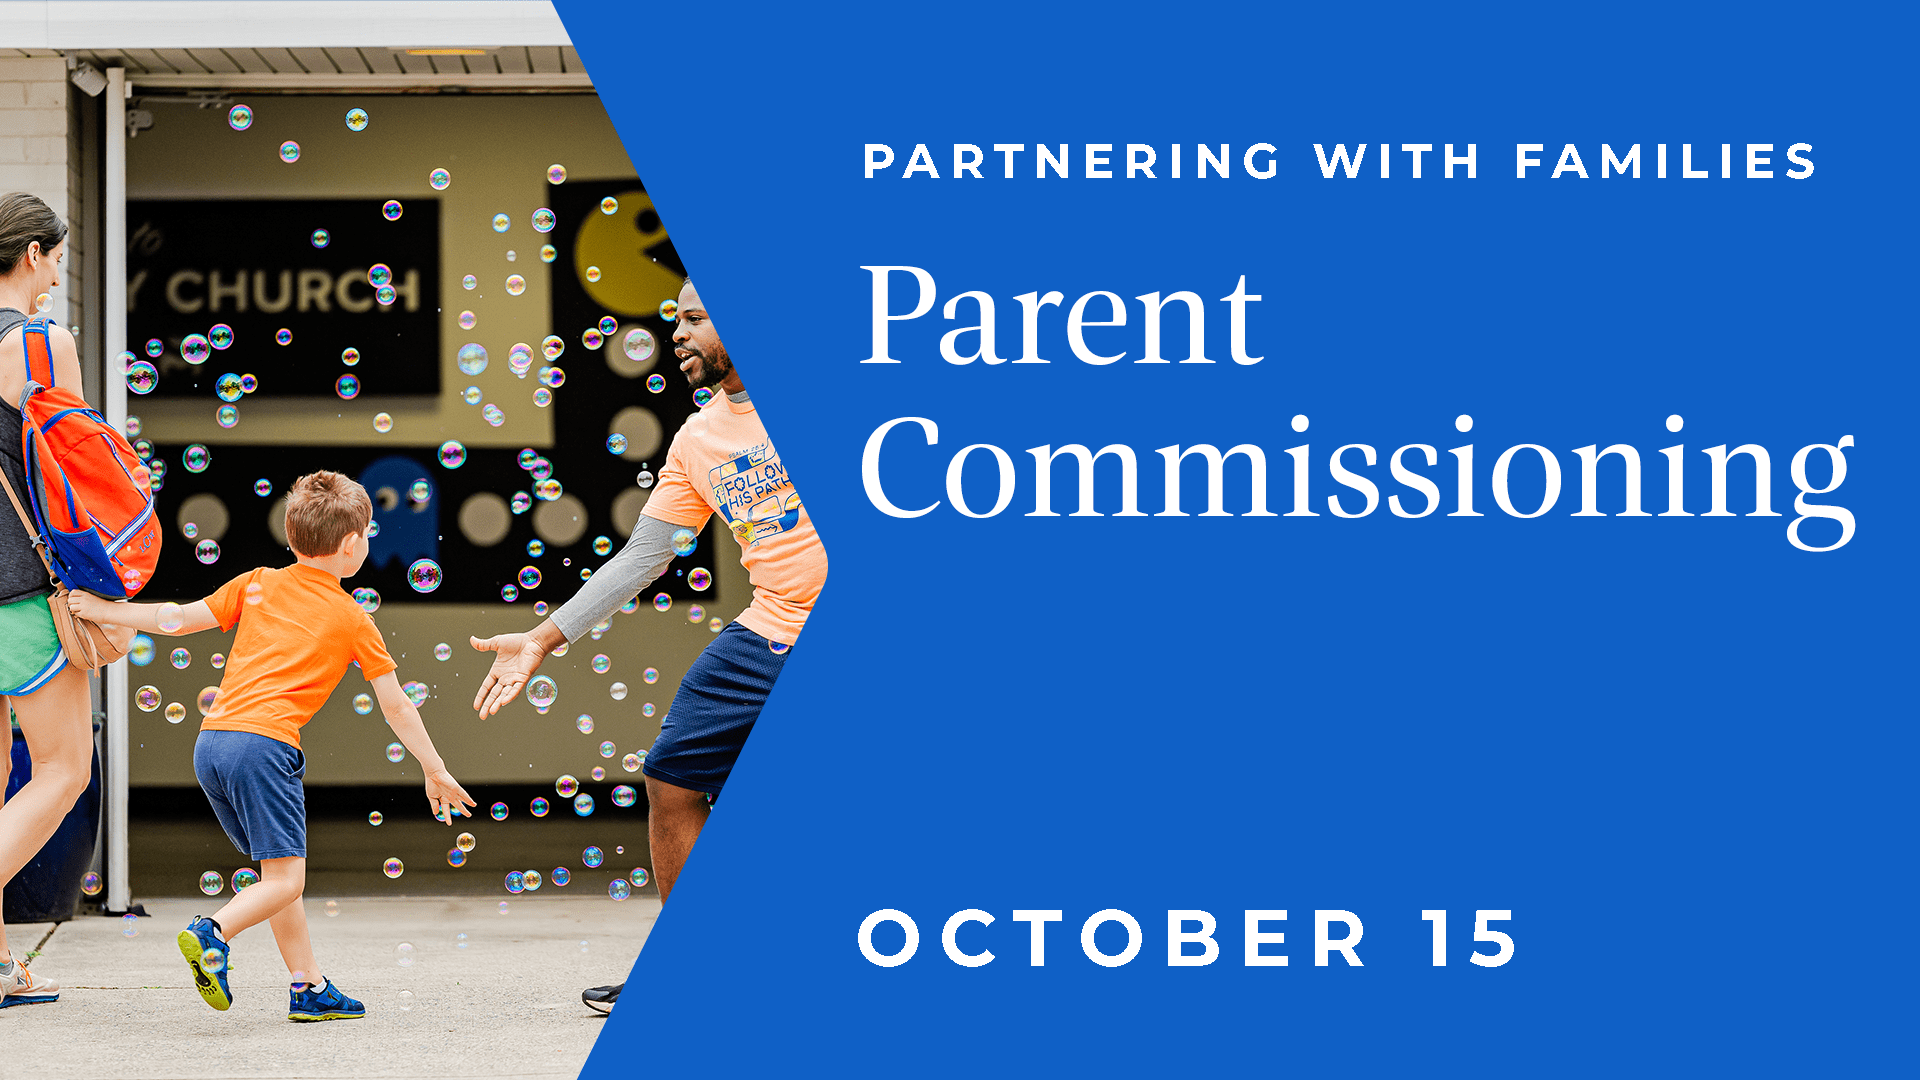 Parent Commissioning - Parent Commissioning